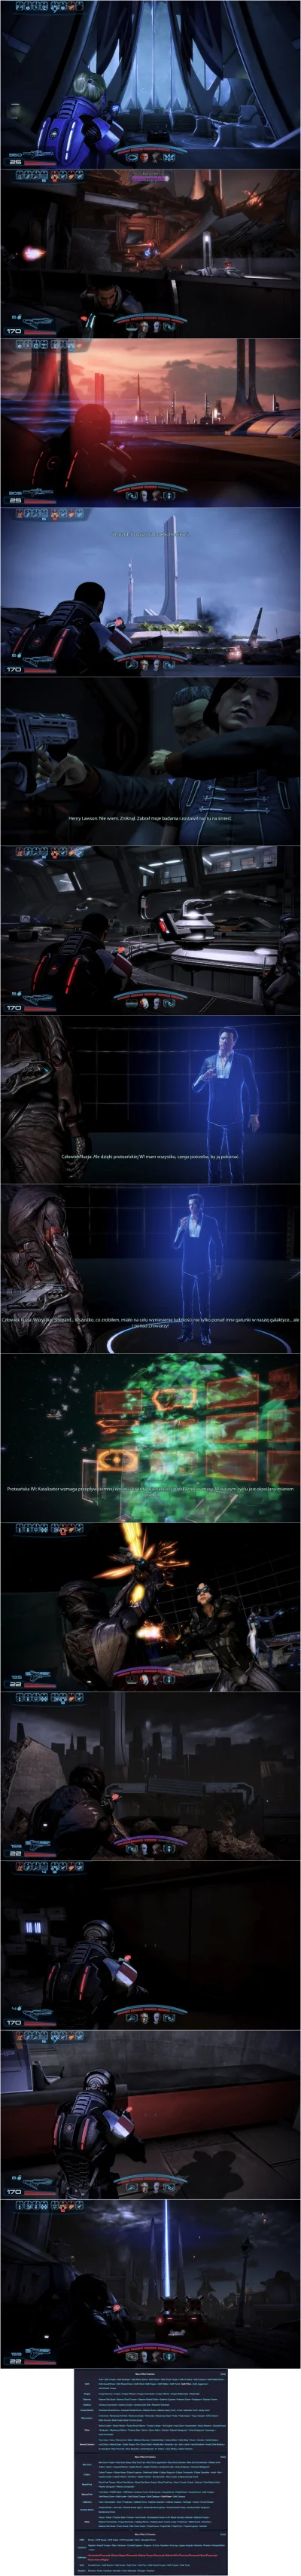 Lisaros - Mass Effect 3 i BioWare

Część 6

Poprzednie części:
pierwsza 
druga
...